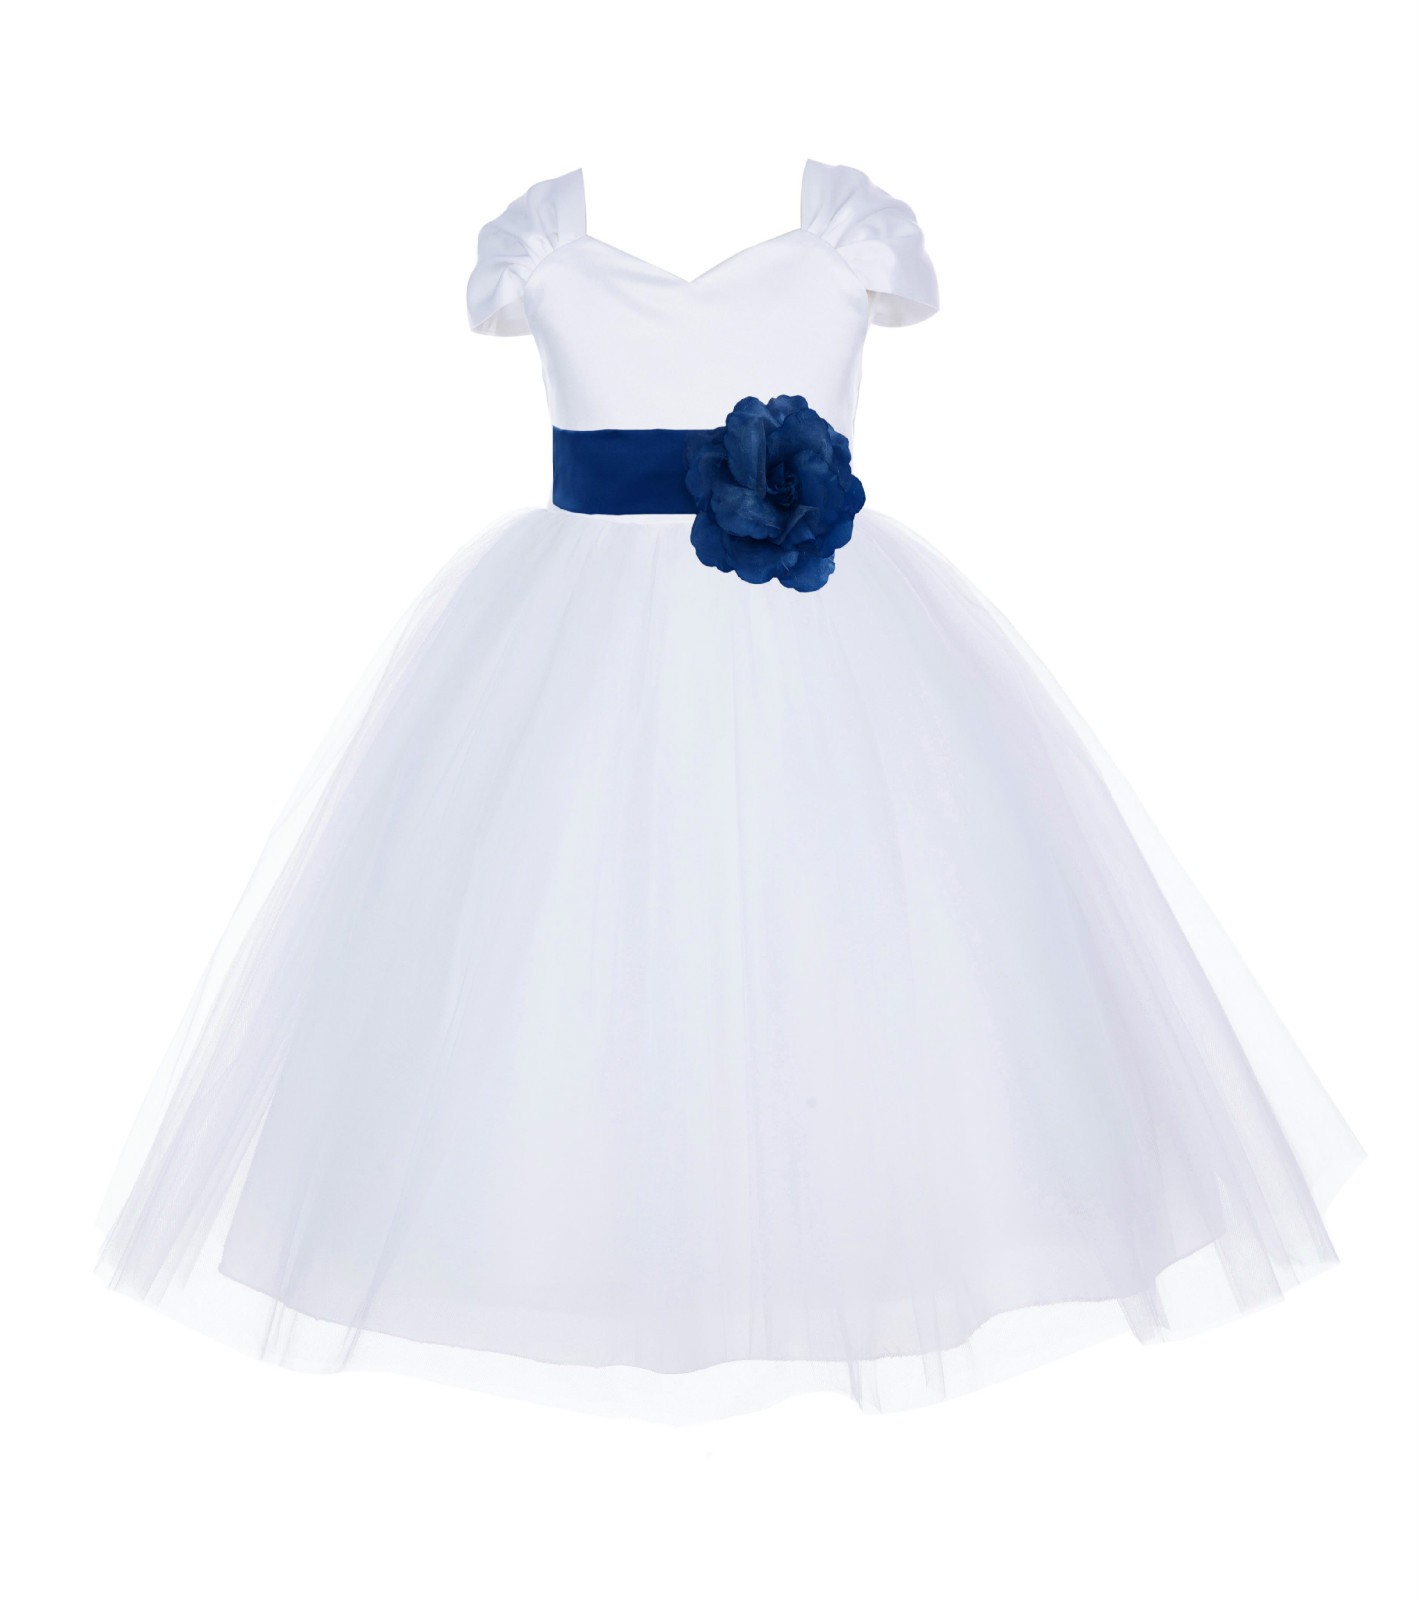 White/Royal Blue V-shaped Neckline Short Sleeves Tulle Flower Girl Dress 154S